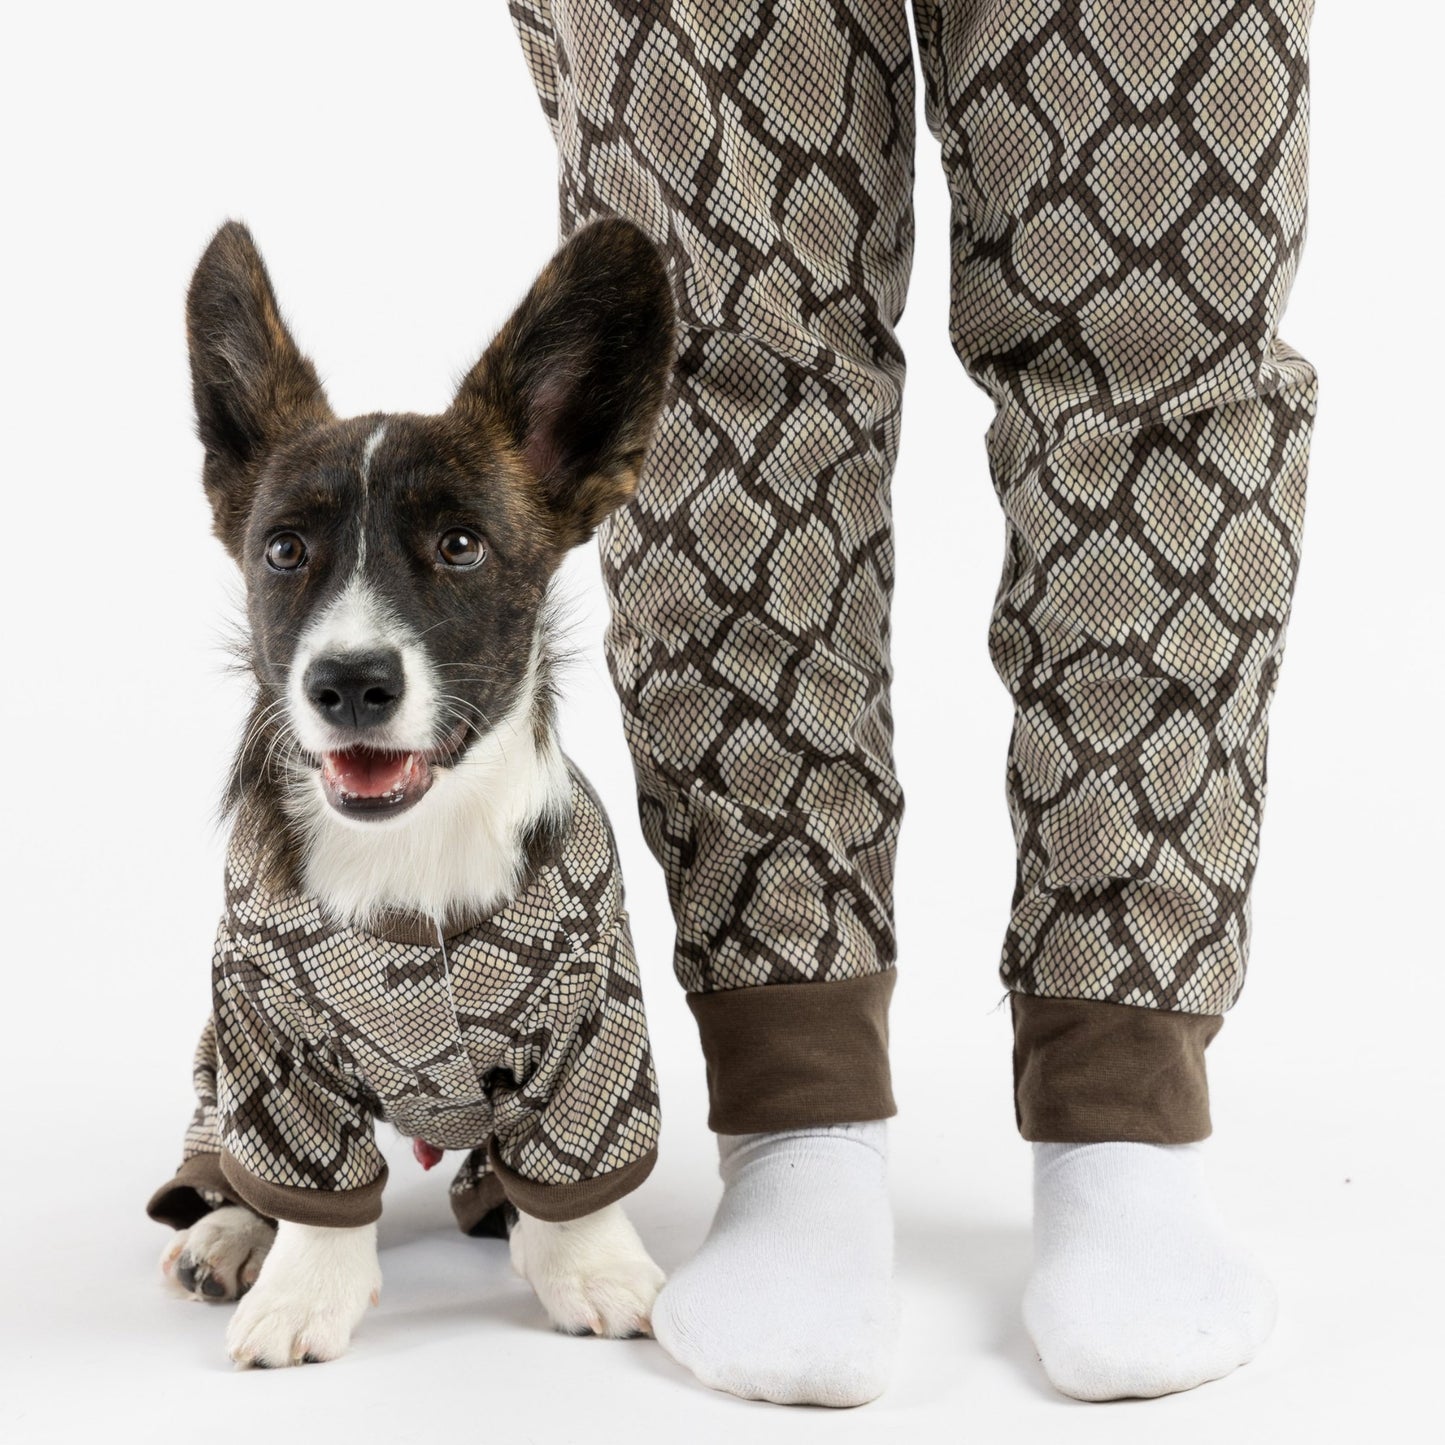 Matching Human & Dog Pajama - Snakeskin - Silver Paw